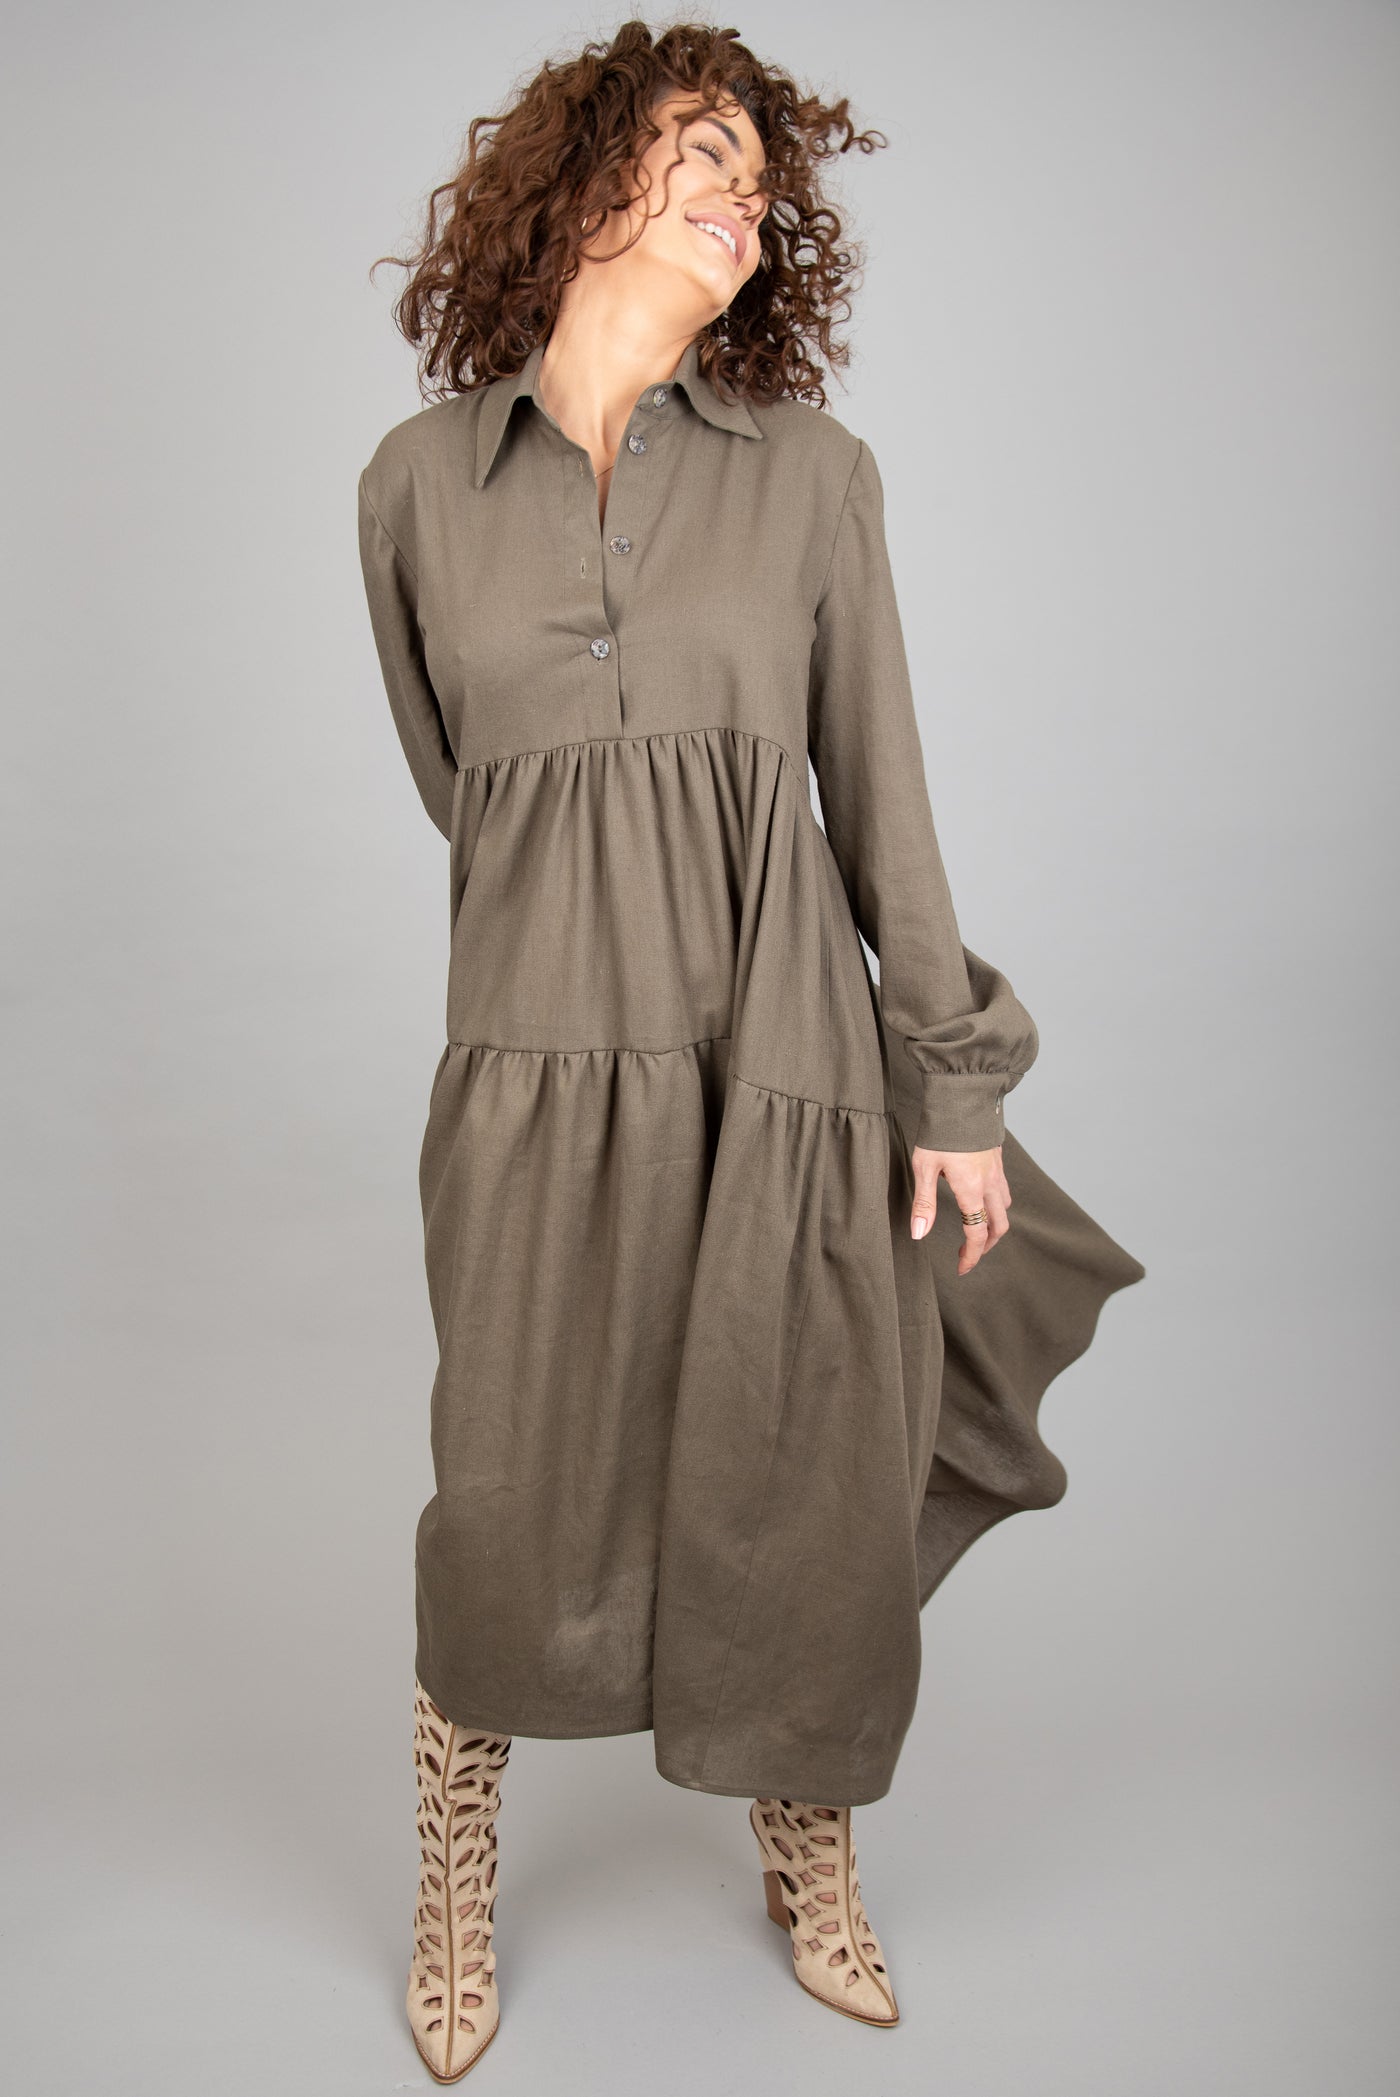 Ruffled linen shirt dress F2258